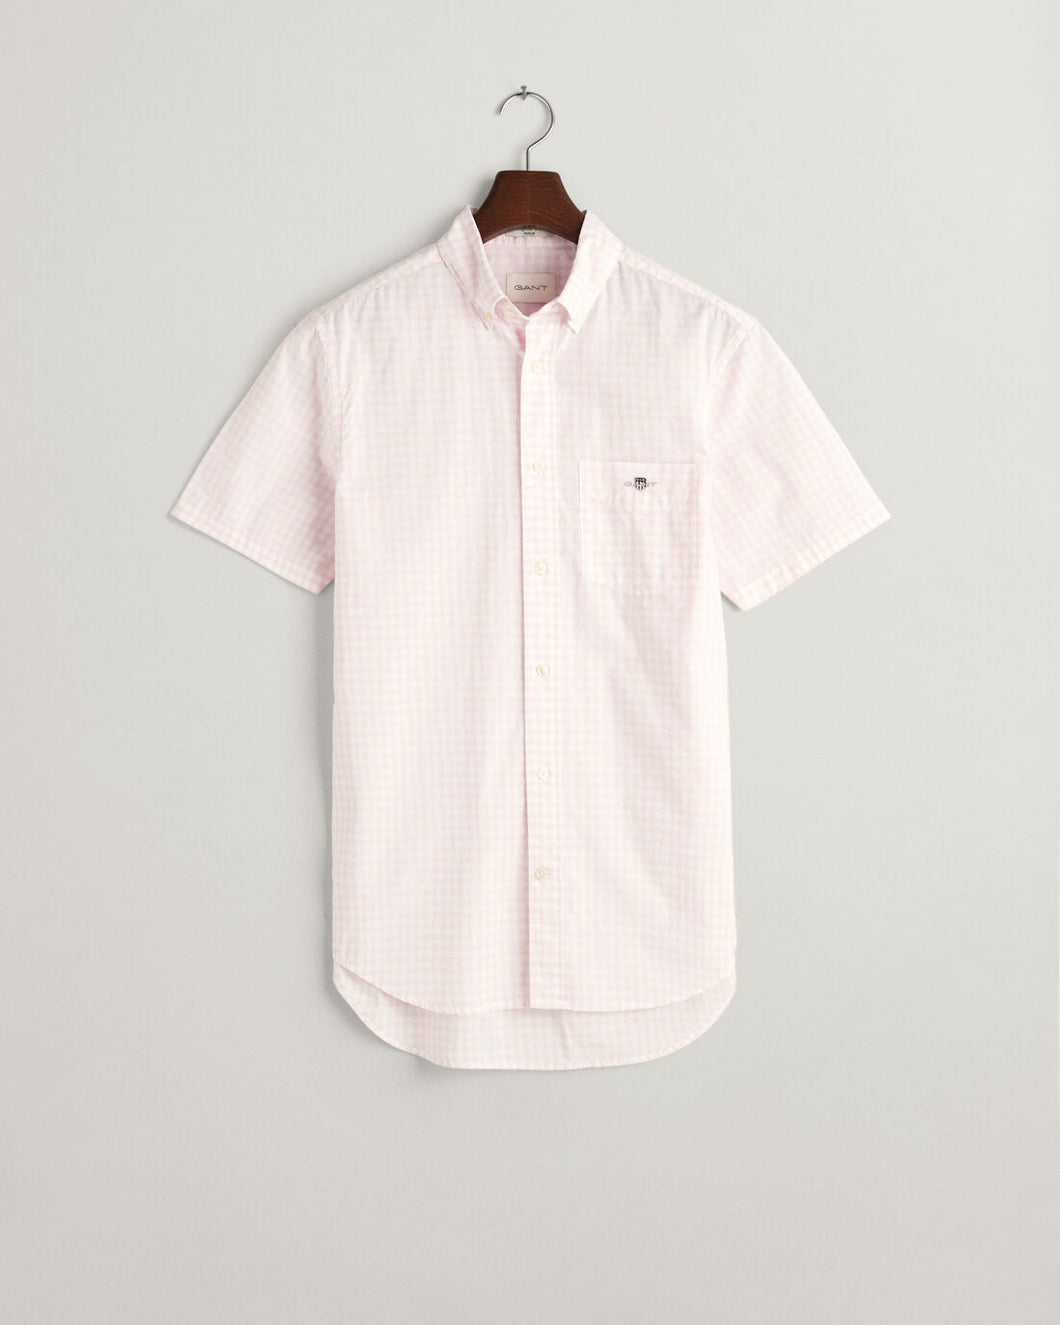 GANT - 3XL Poplin Short Sleeve Shirt, Ligtht Pink